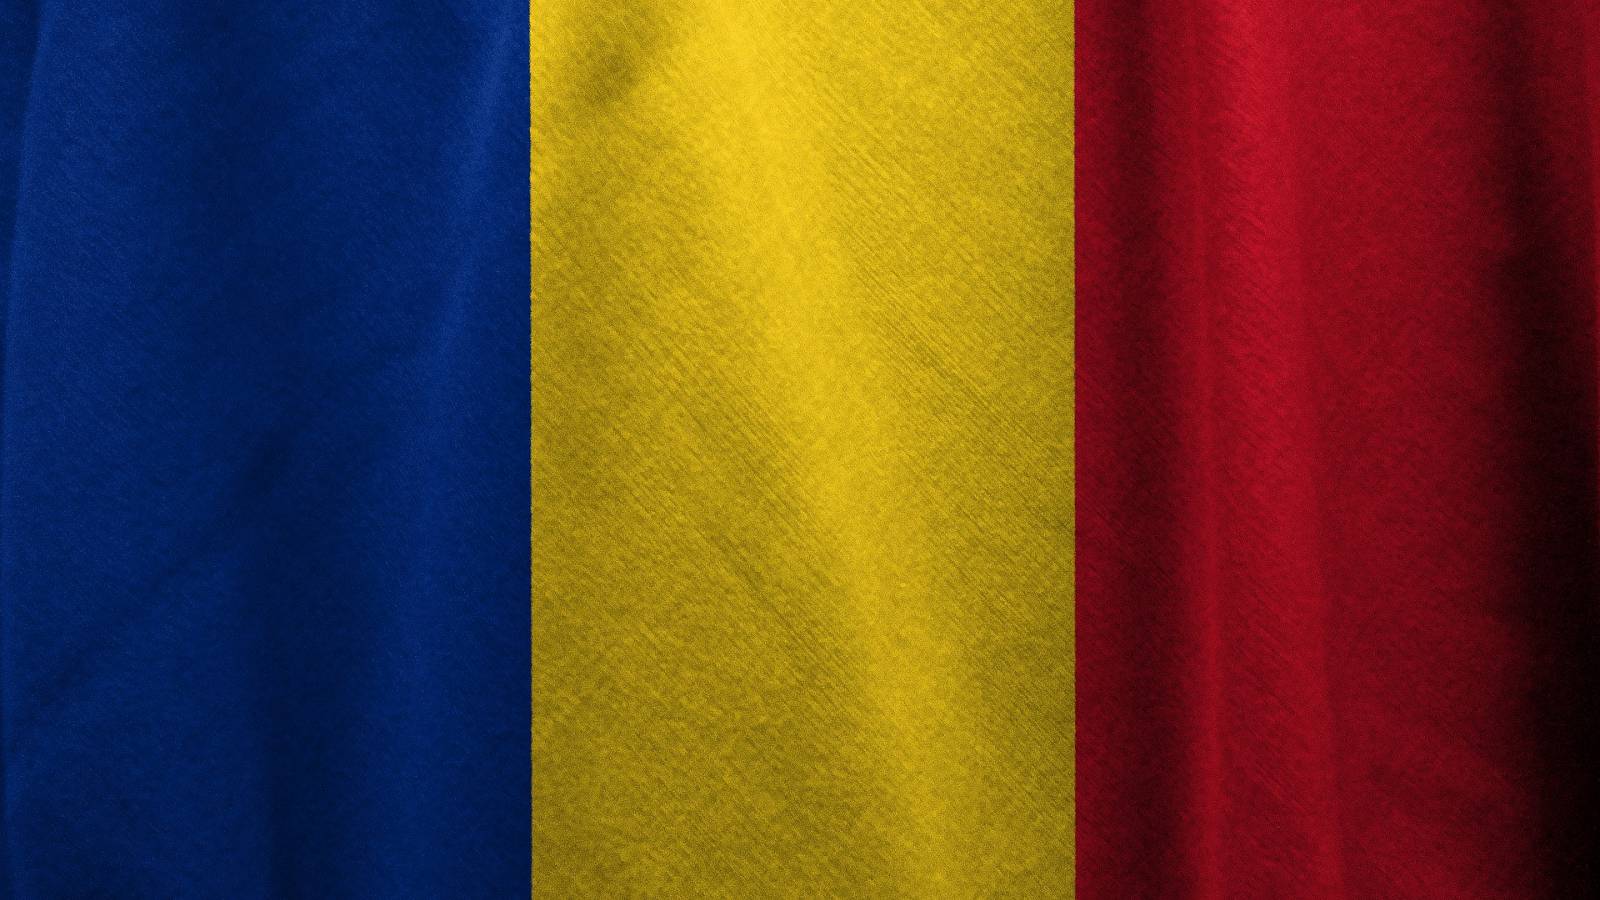 Ratele de Incidenta pentru COVID-19 in Romania pe 6 Februarie 2022